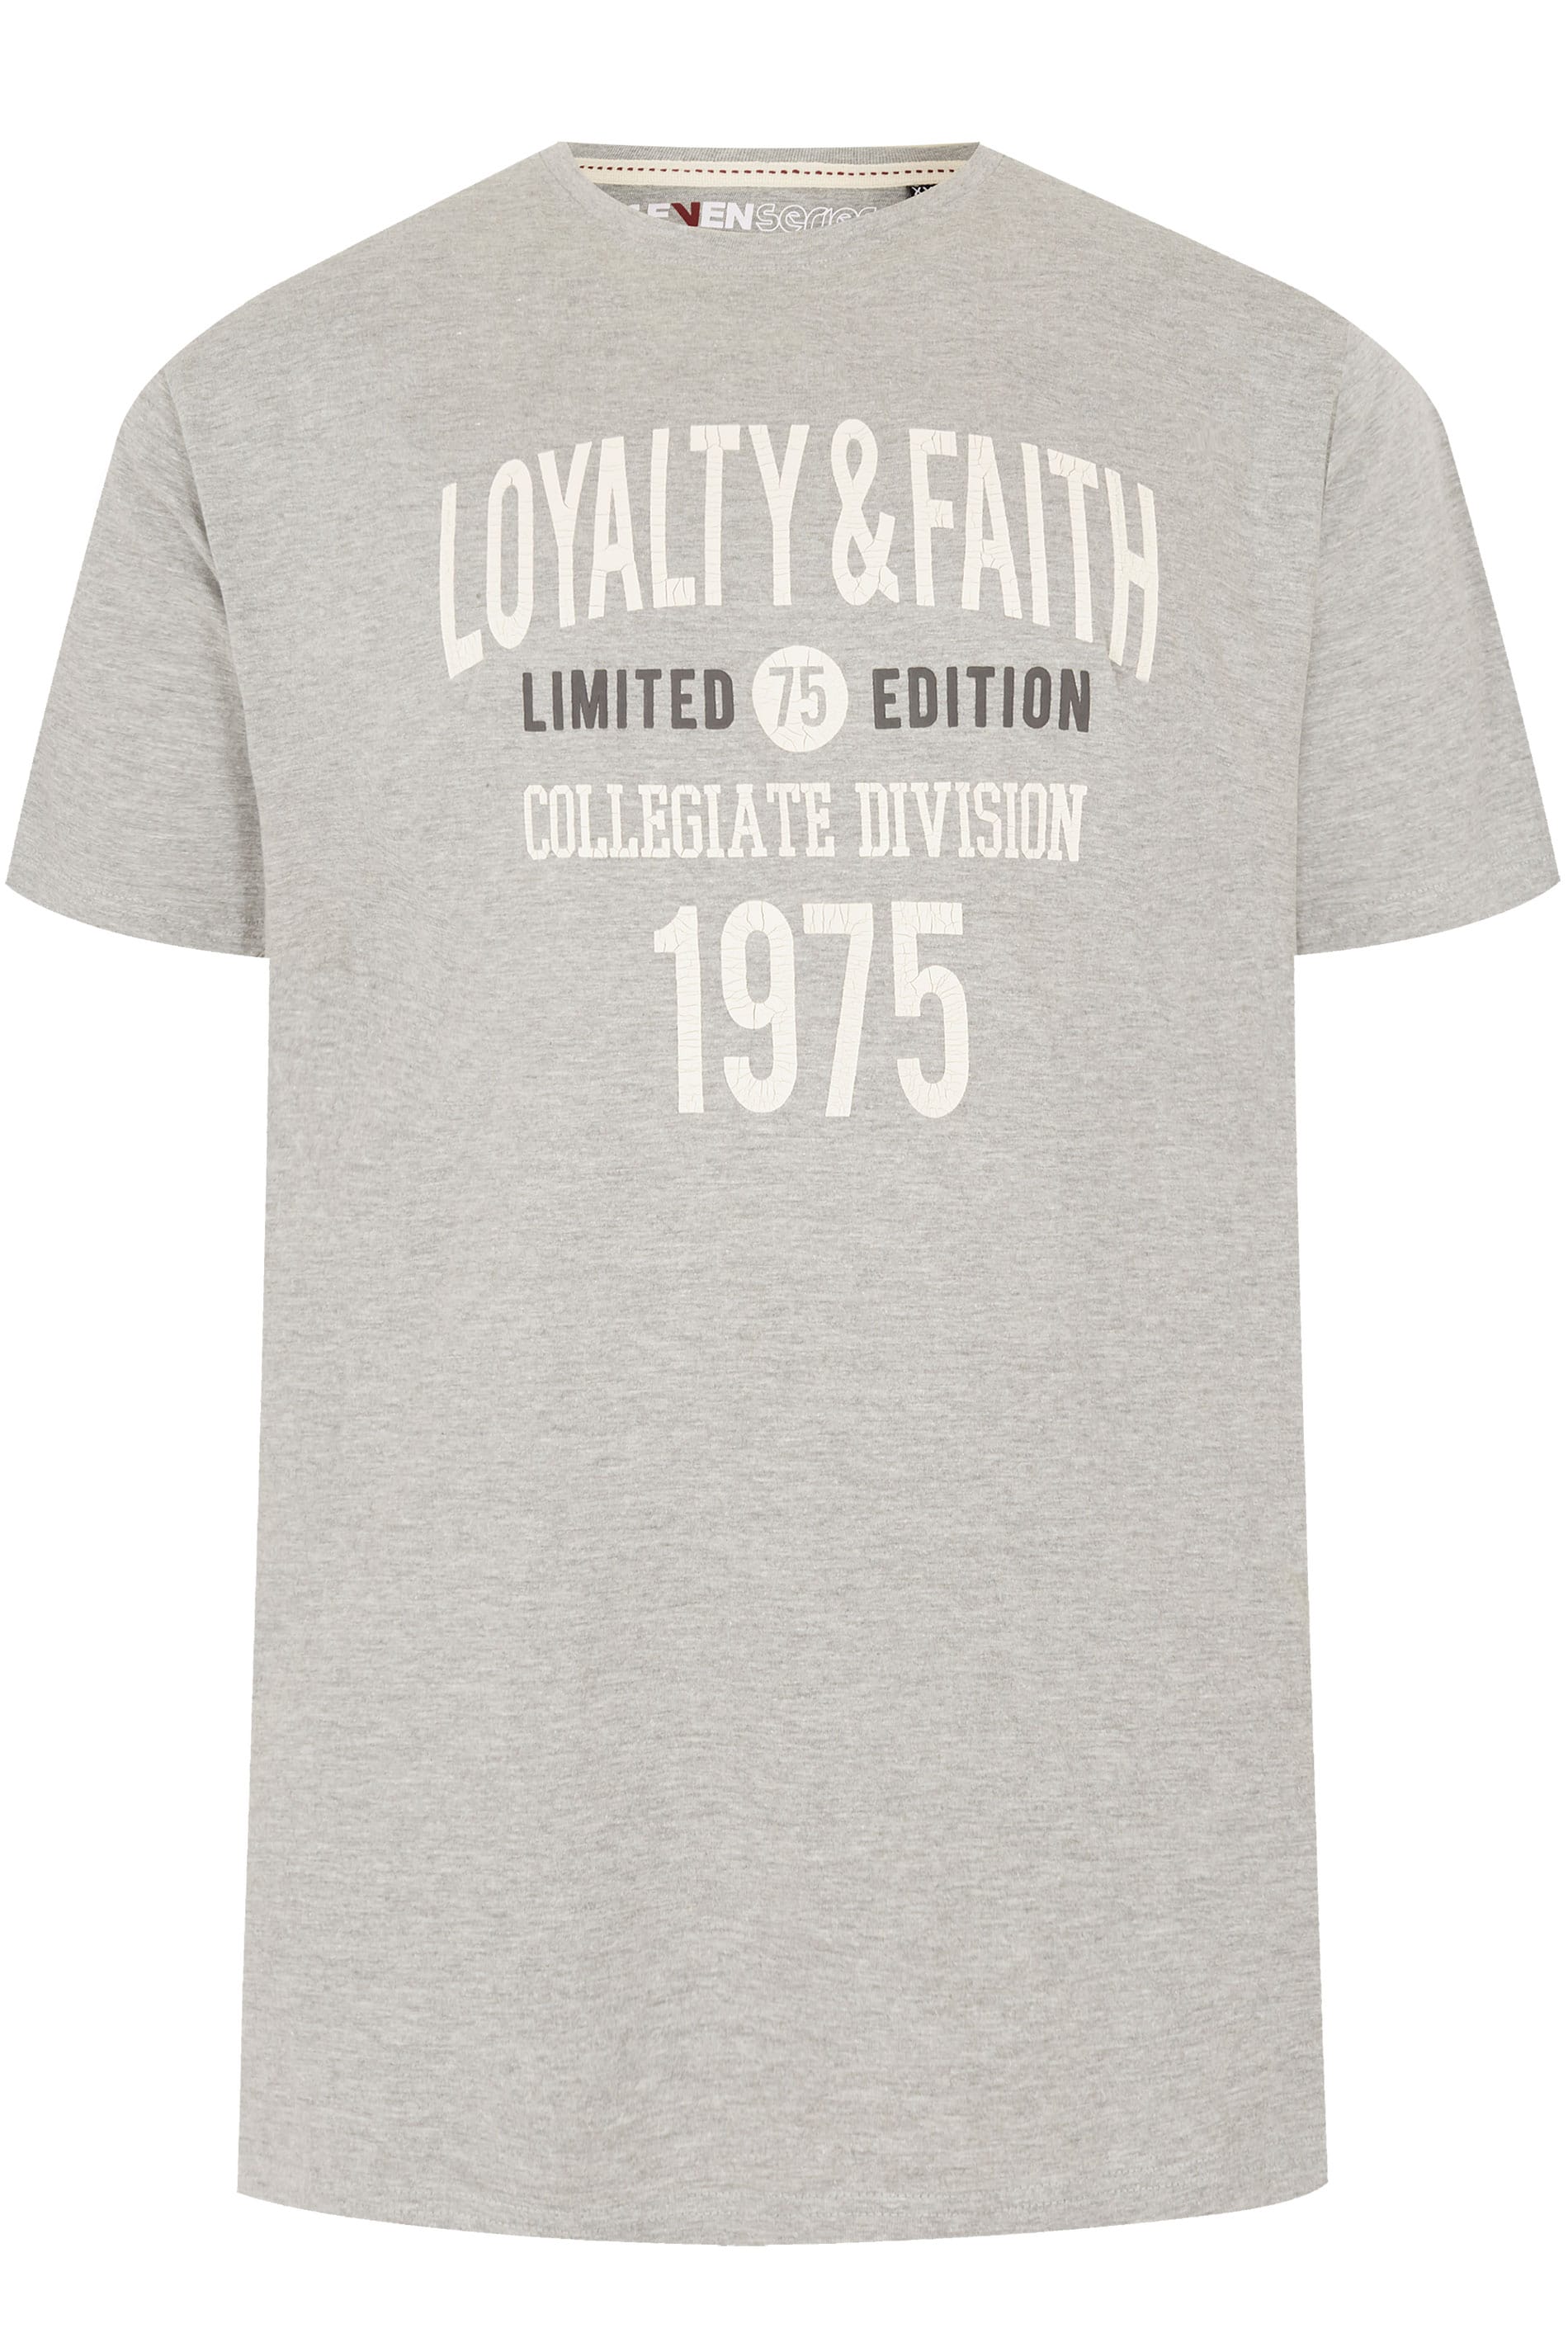 LOYALTY & FAITH Grey Slogan Print T-Shirt, Extra Large Sizes 2XL, 3XL ...